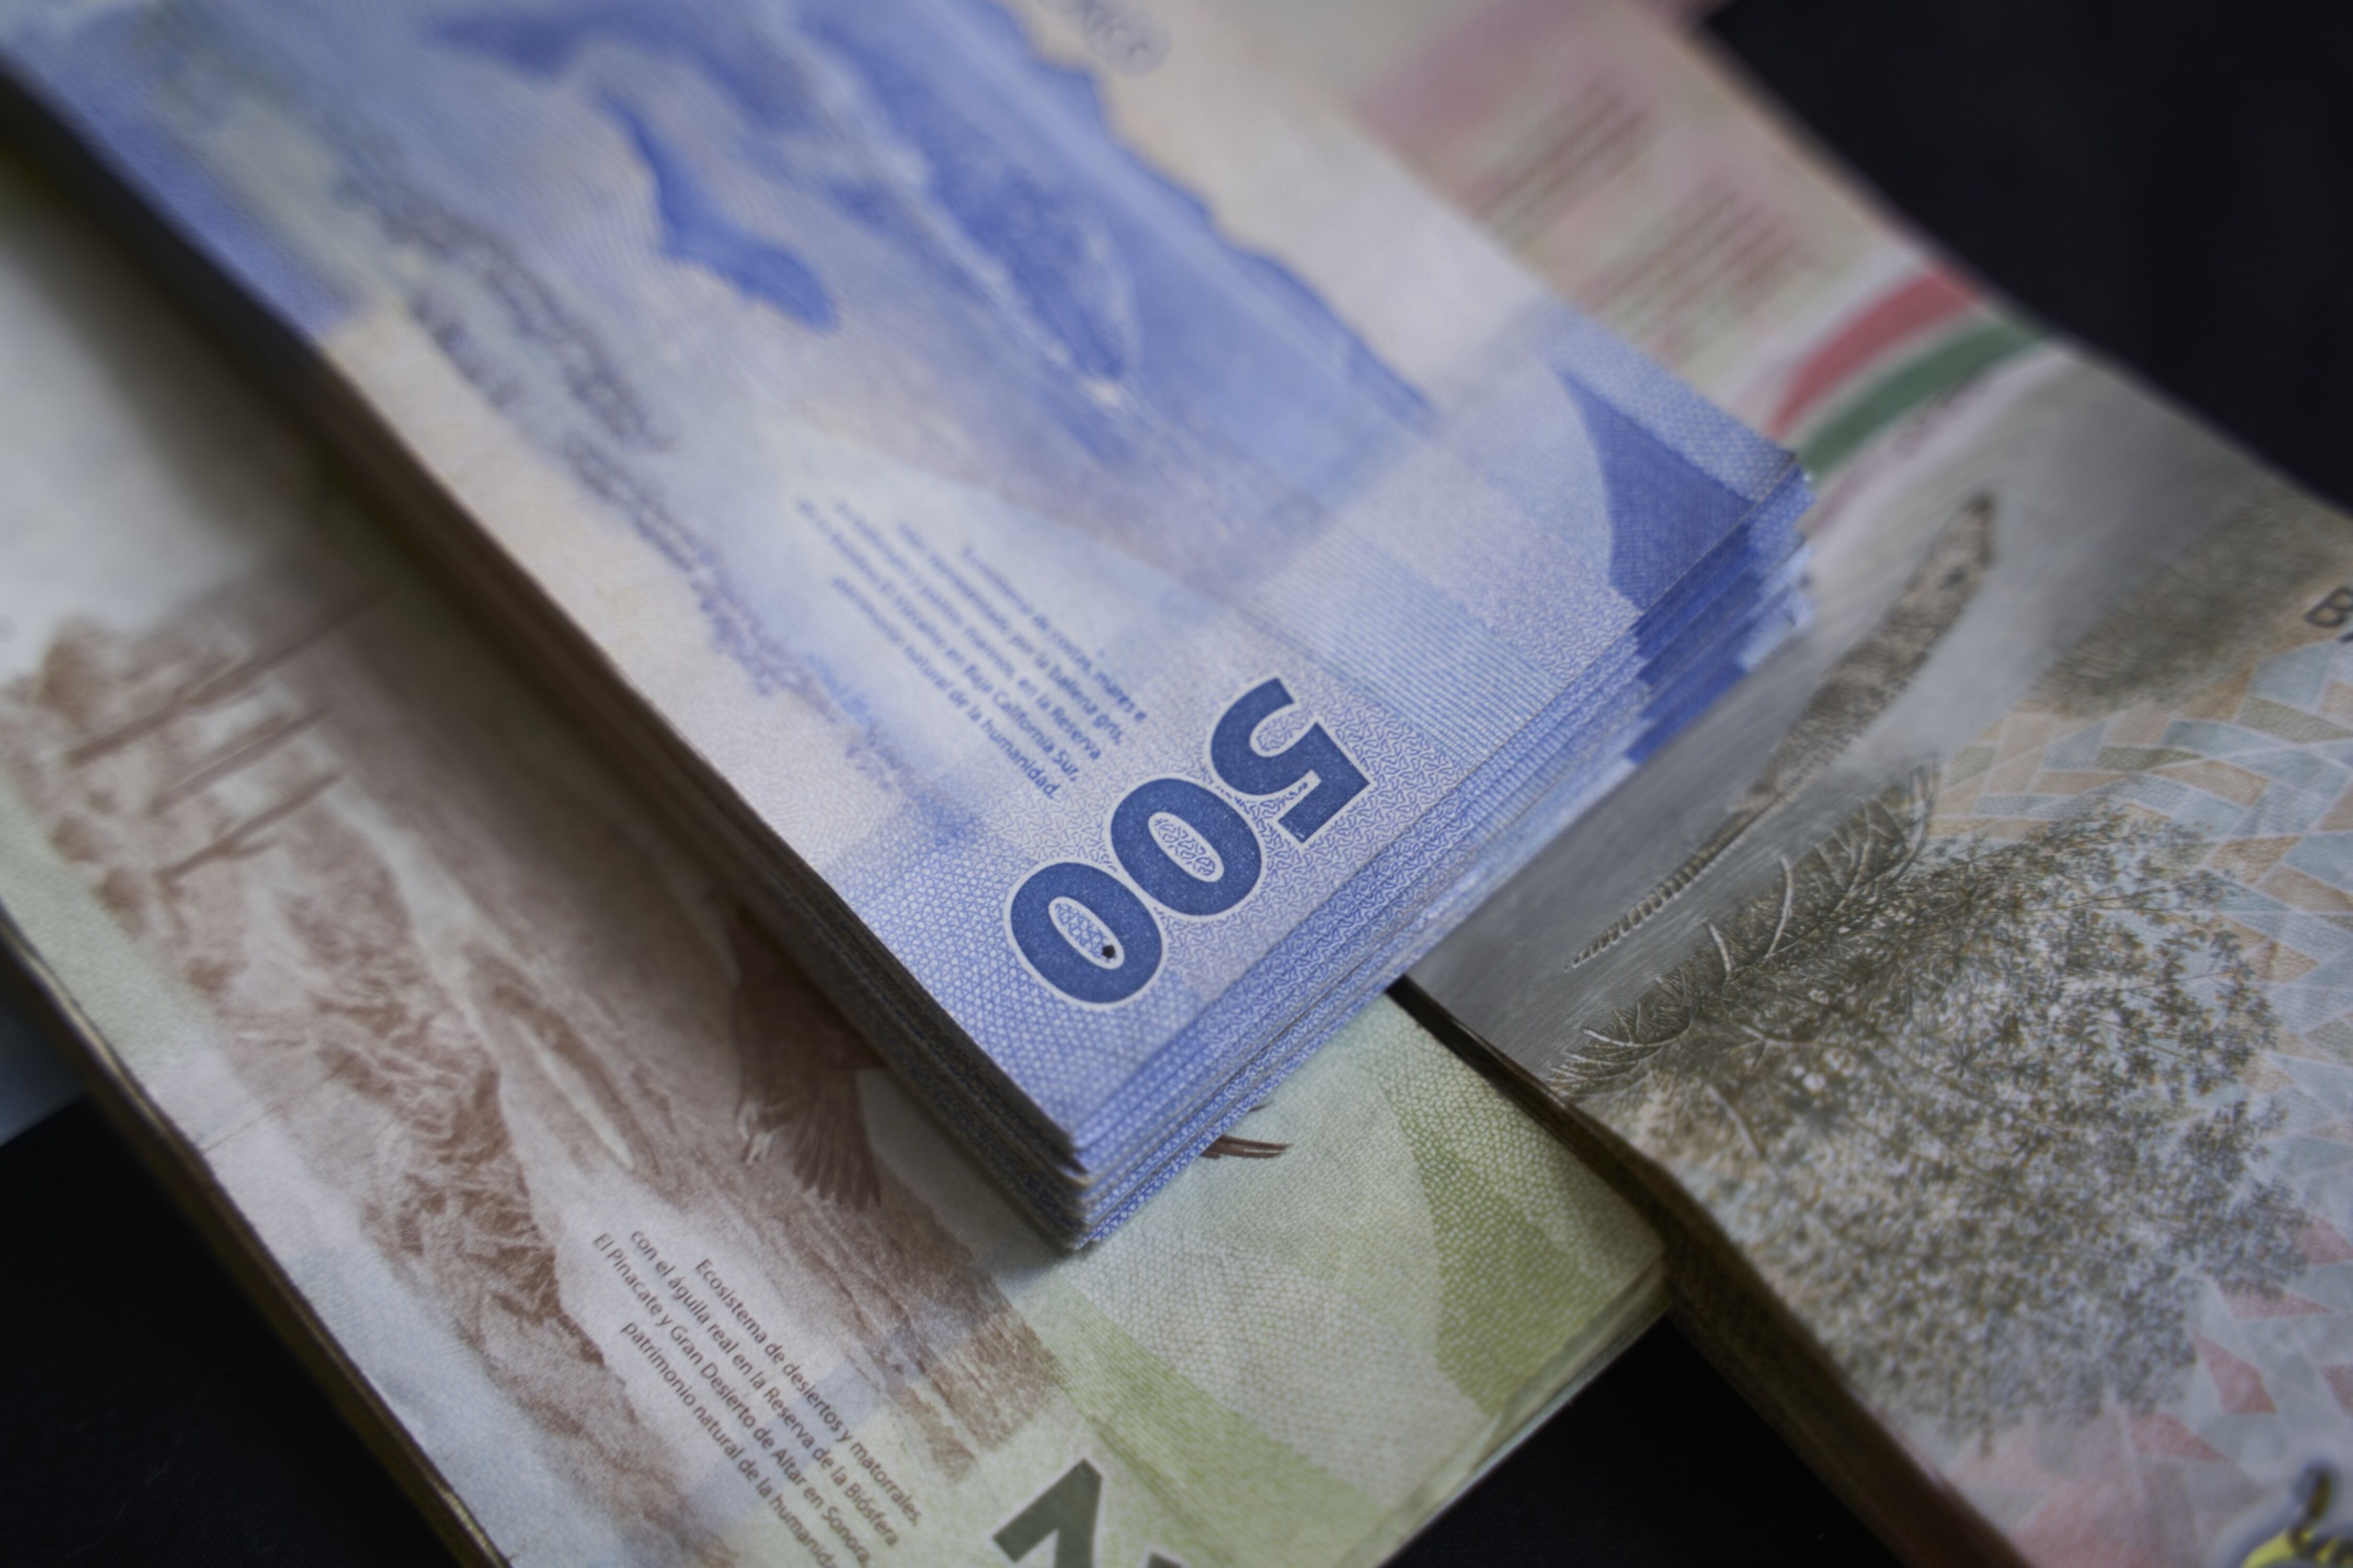 Precio del dólar hoy 18 de abril: cuál es el tipo de cambio en México